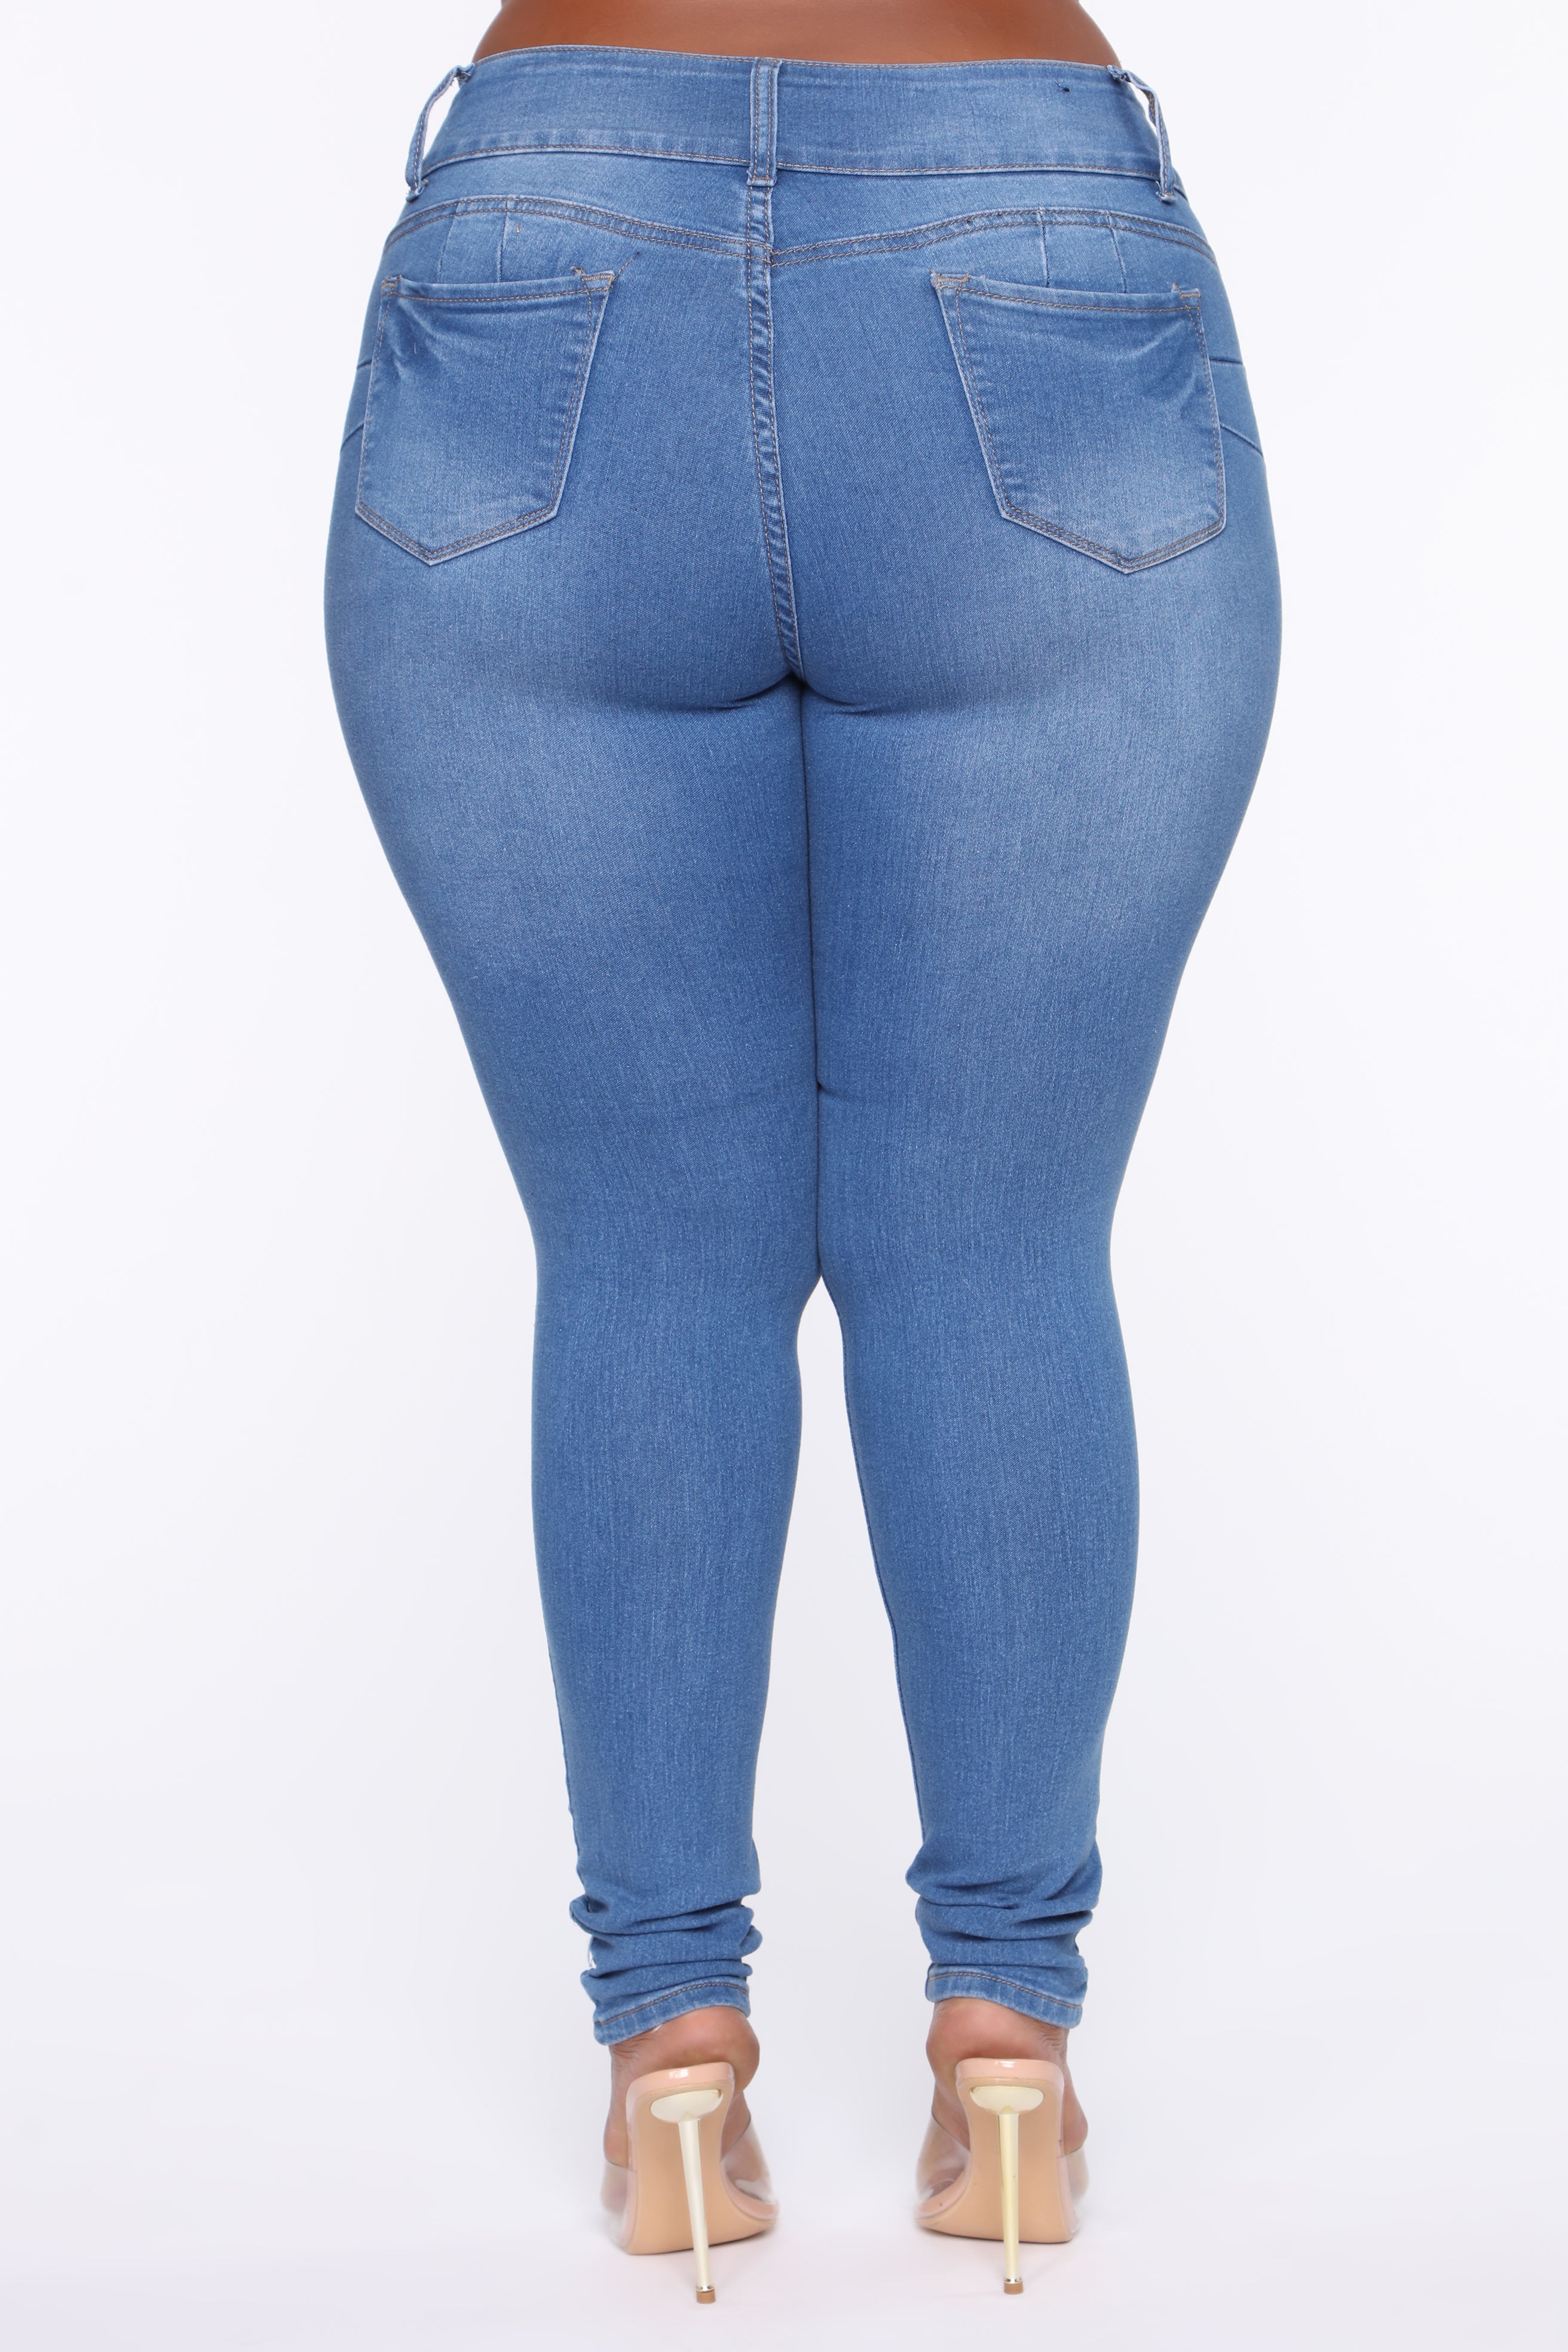 Bubble Butt Jeans - Medium – Fashion Nova